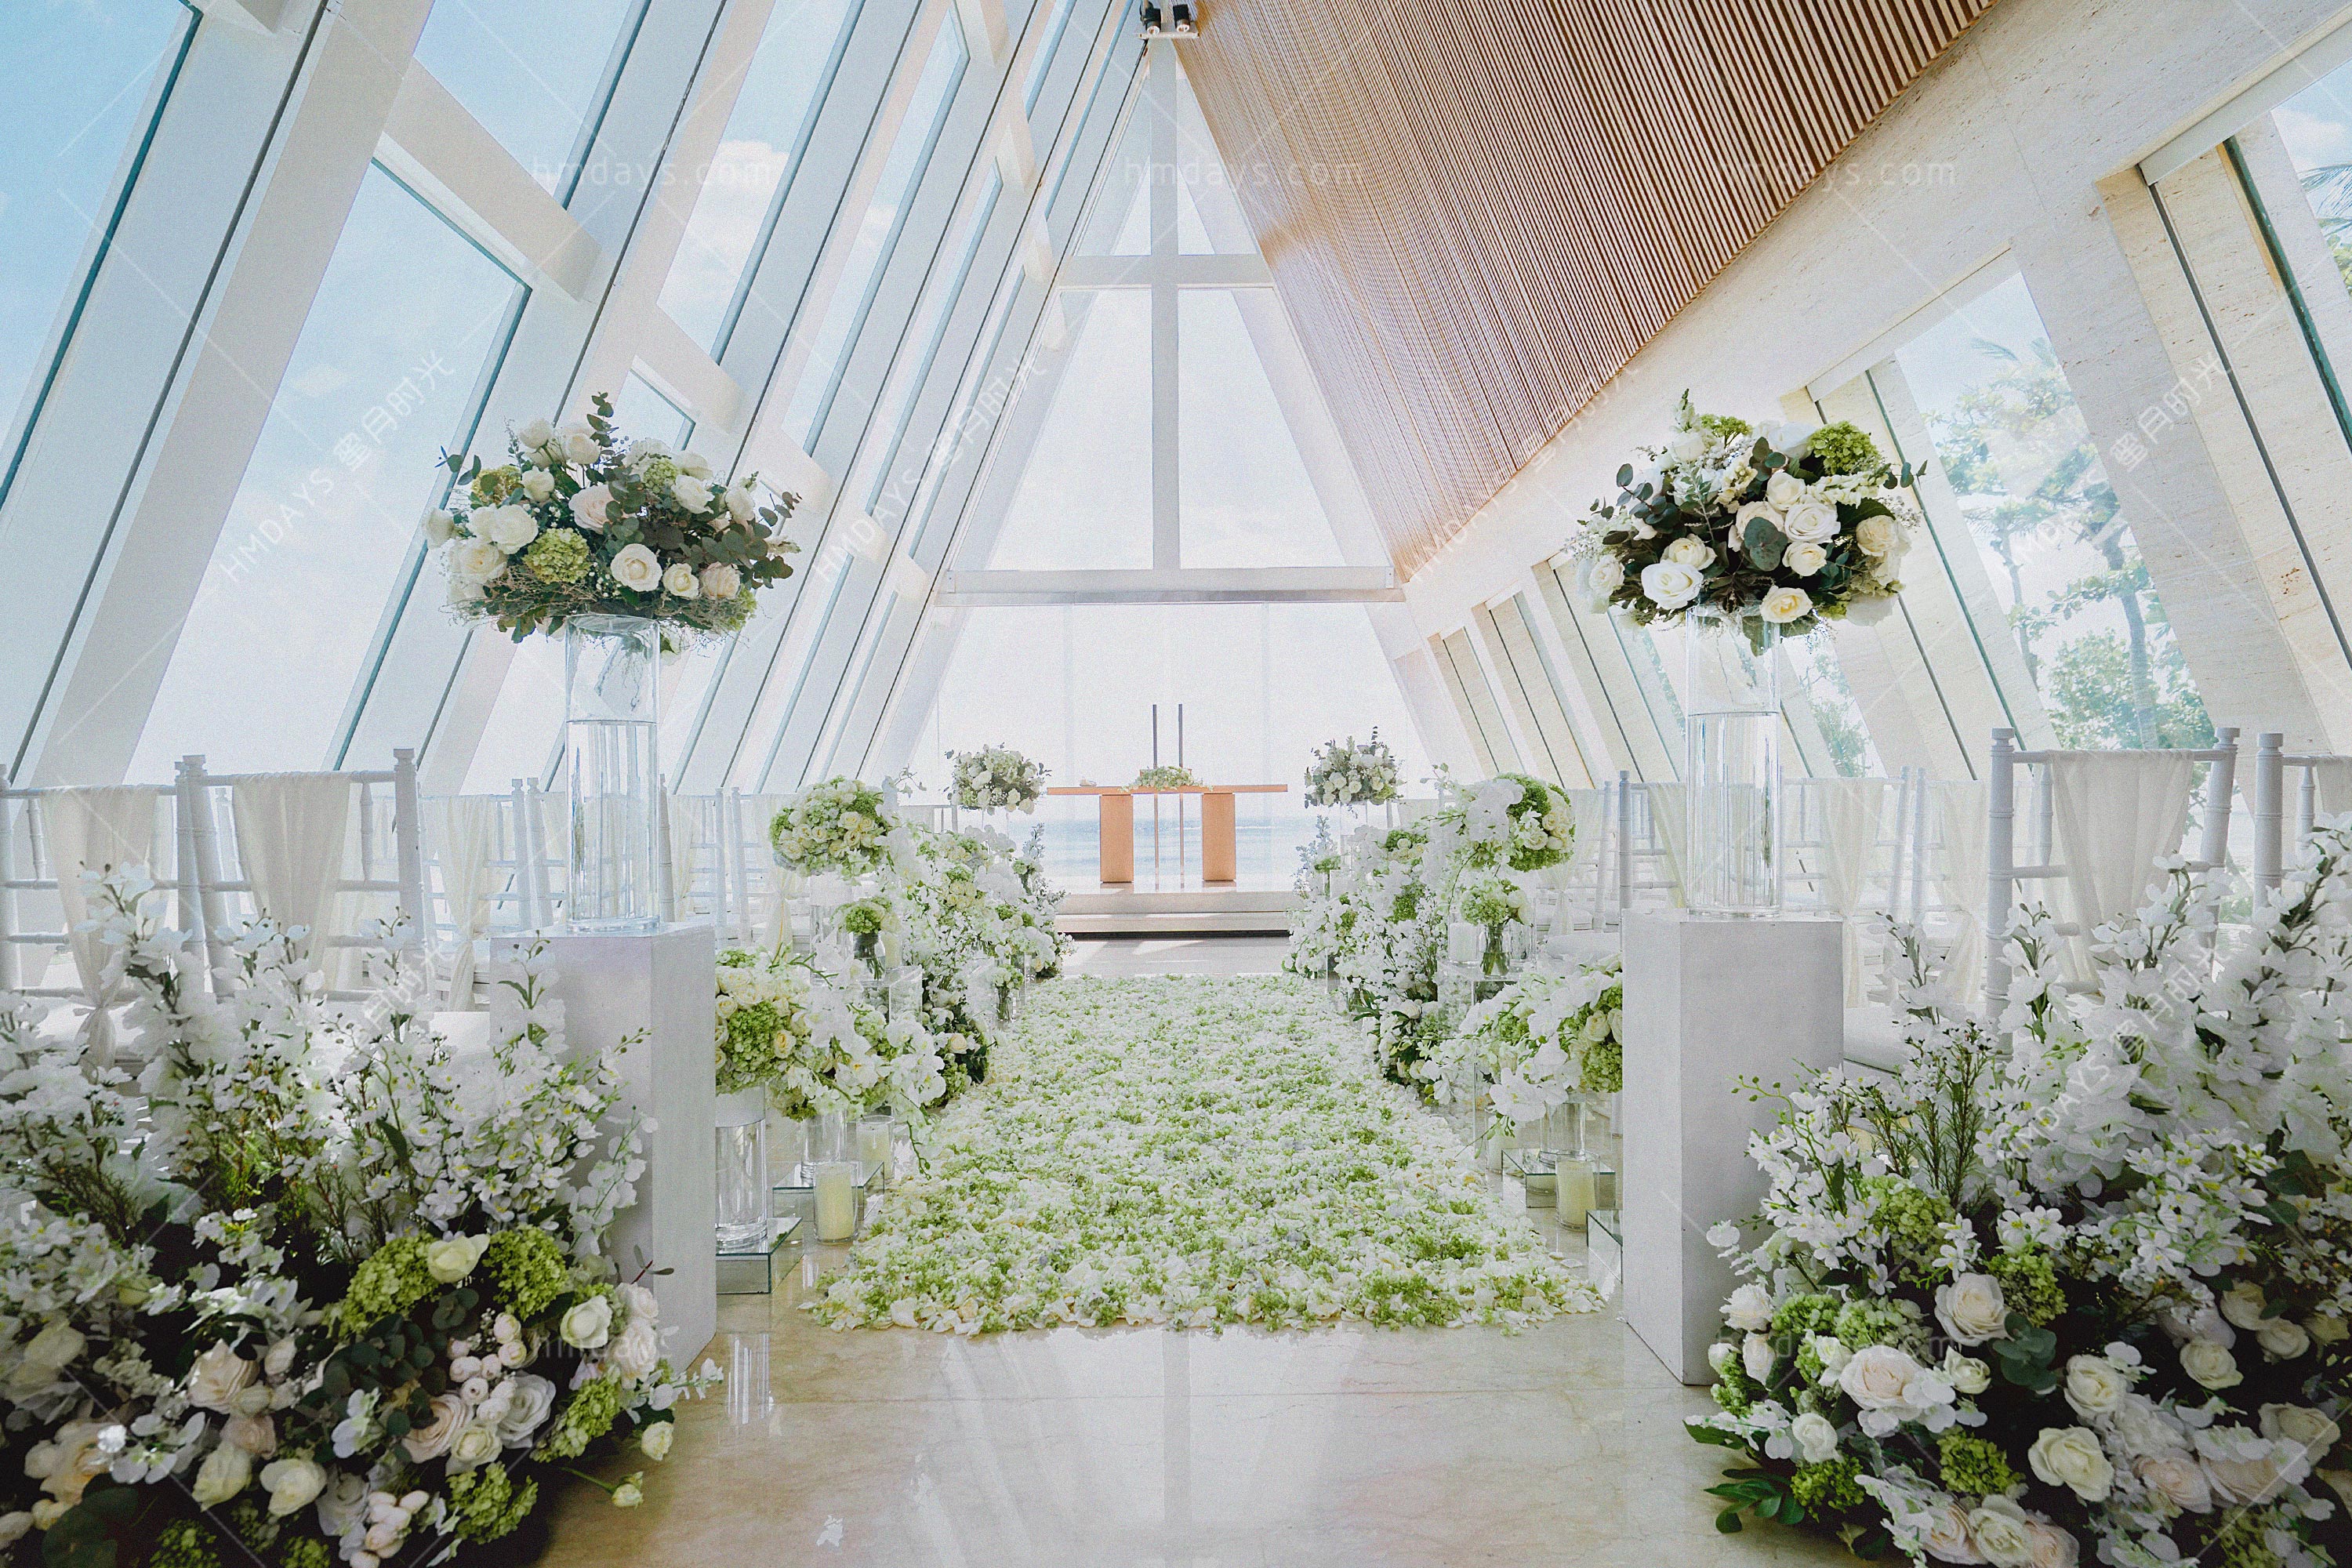  巴厘岛港丽无限教堂婚礼